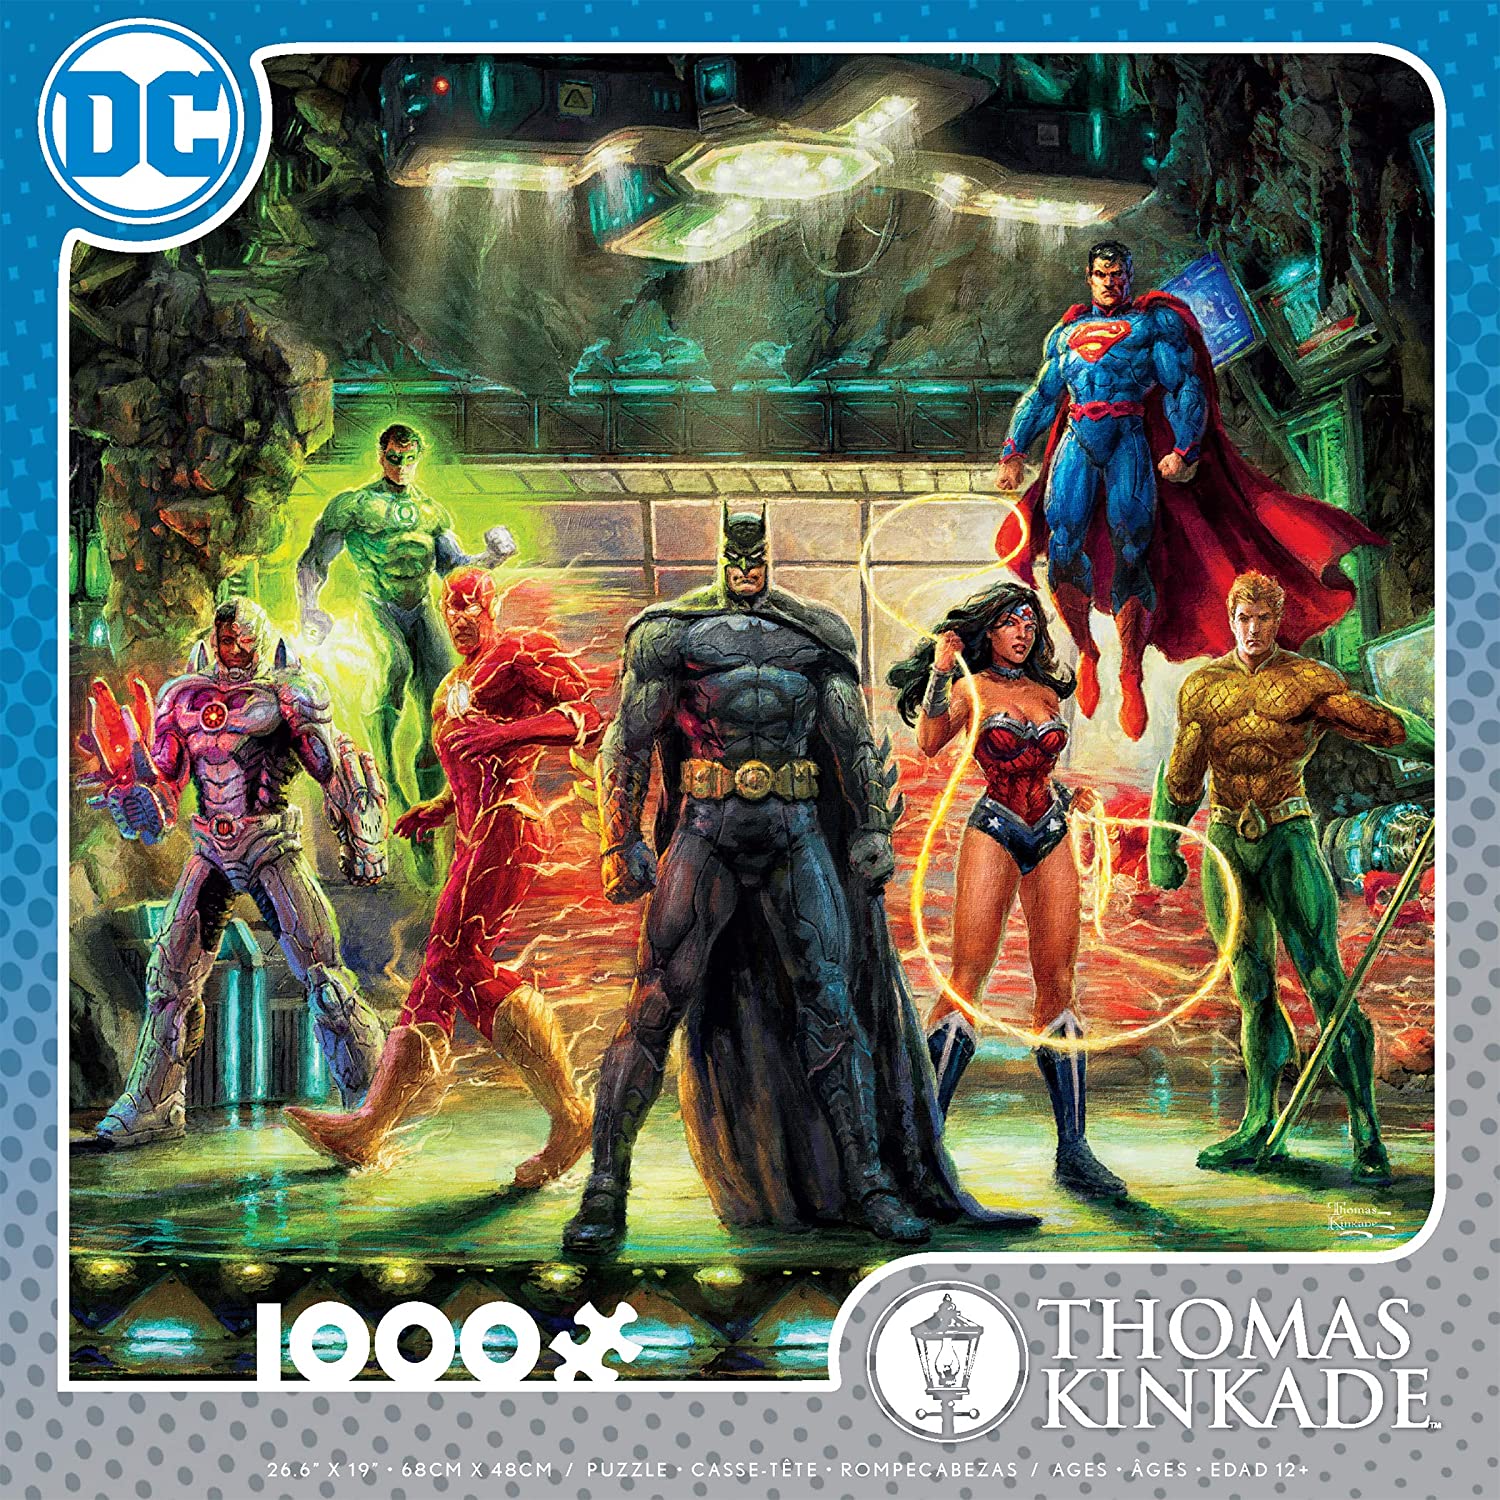 Thomas Kinkade DC Comics -The Justice League (1000 pc puzzle)